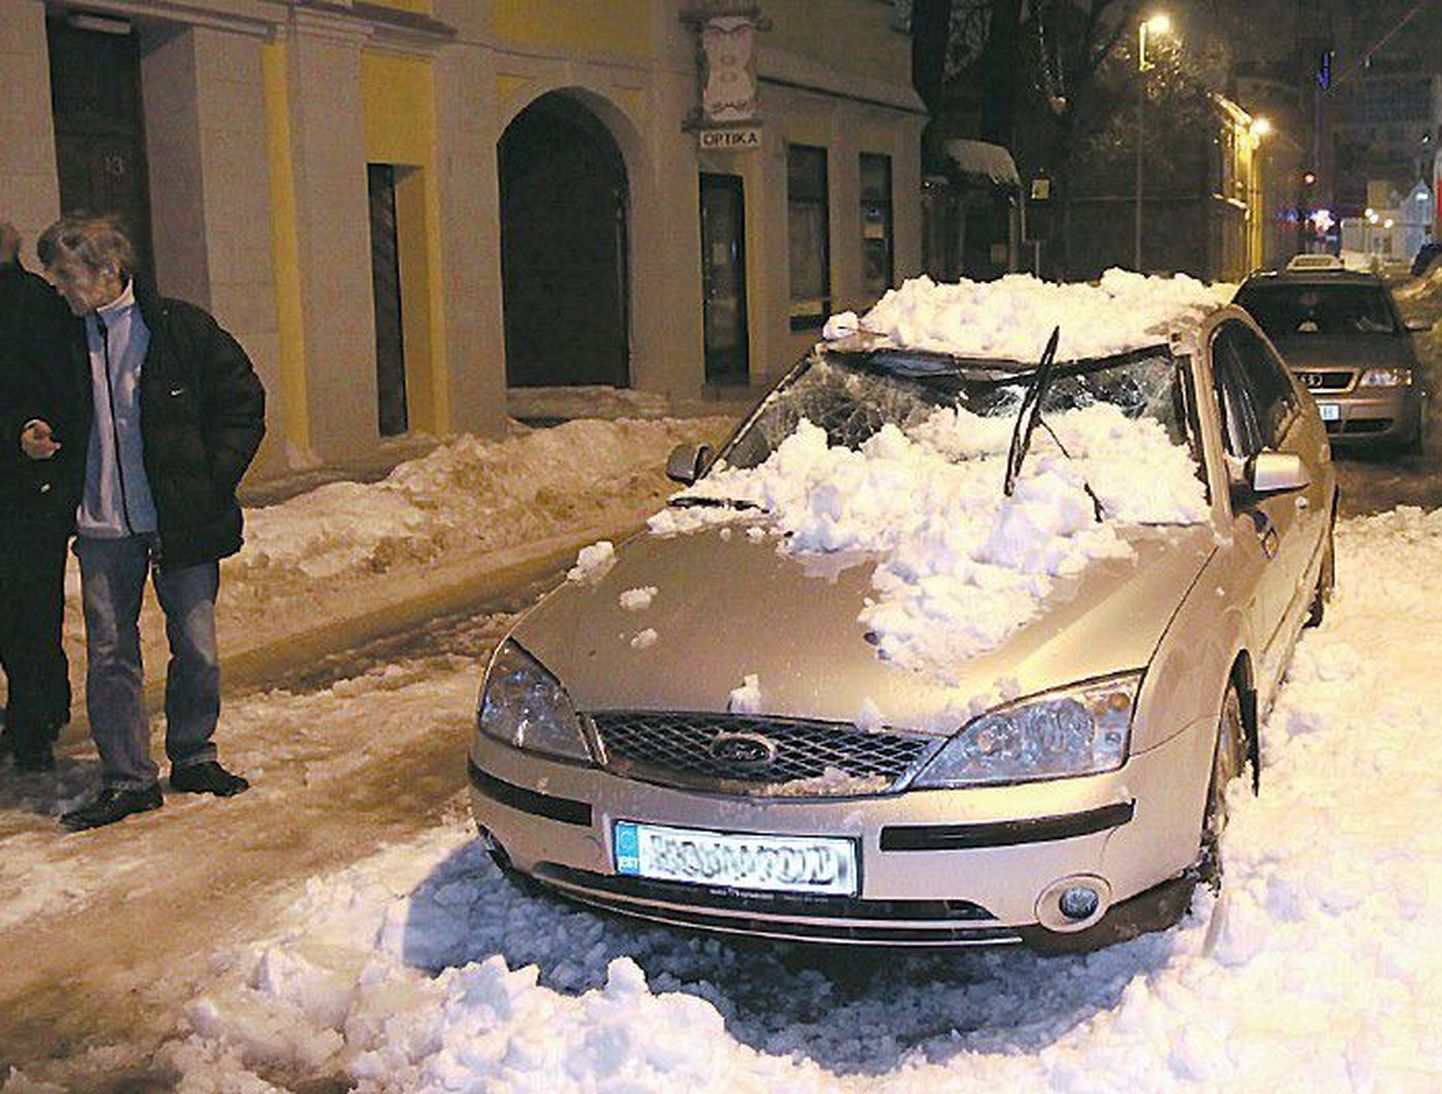 Автомобиль, припаркованный возле дома, пострадал от свалившегося с крыши снега.